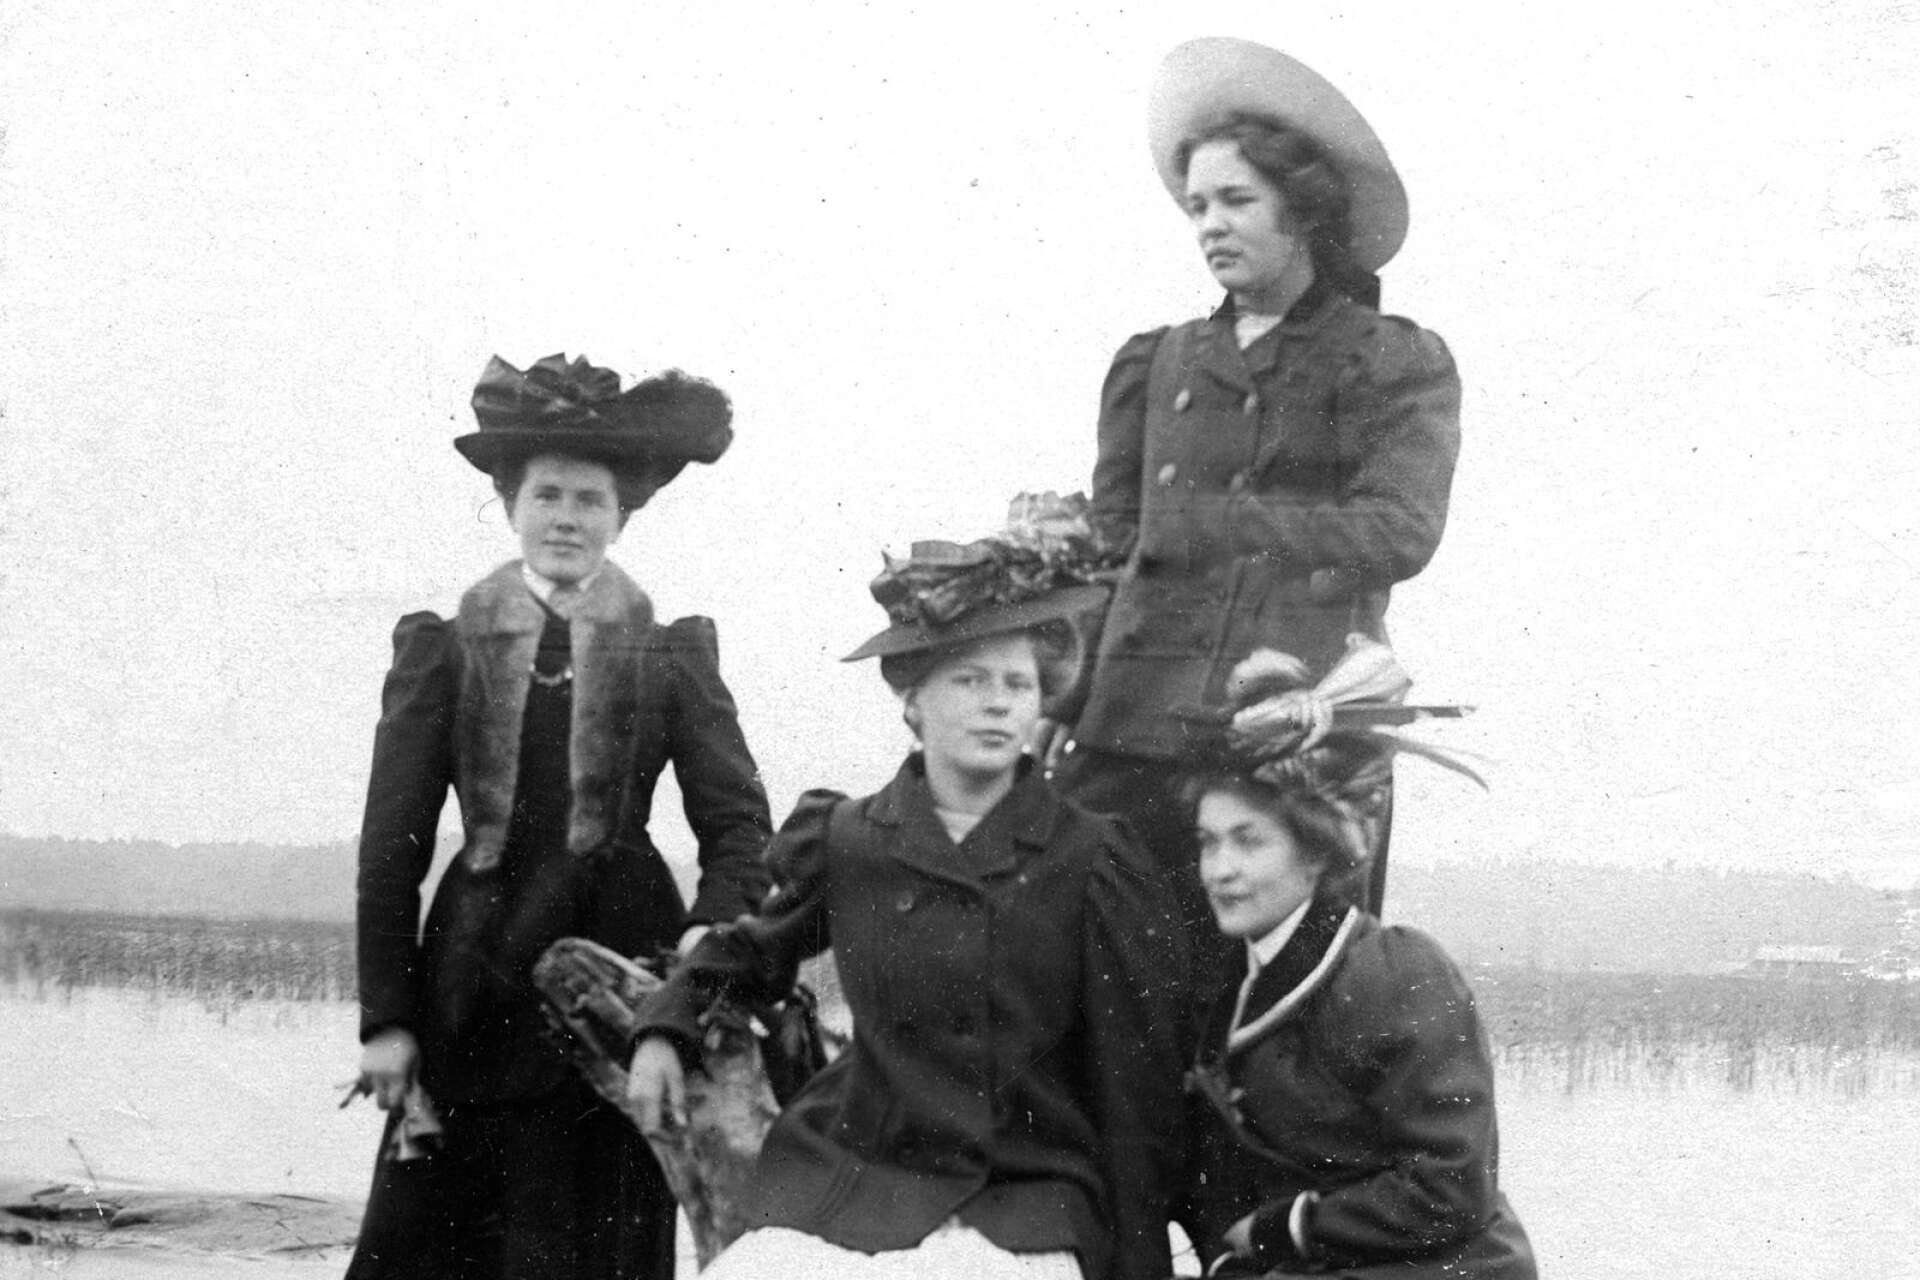 Gunhild, Märta, Gerda och en okänd person i november 1907. ”Det här känns som moderna kvinnor, speciellt de som har lite mindre hattar”, säger Line Malmsten. Hattarna är tidsenligt dekorerade med fjädrar.